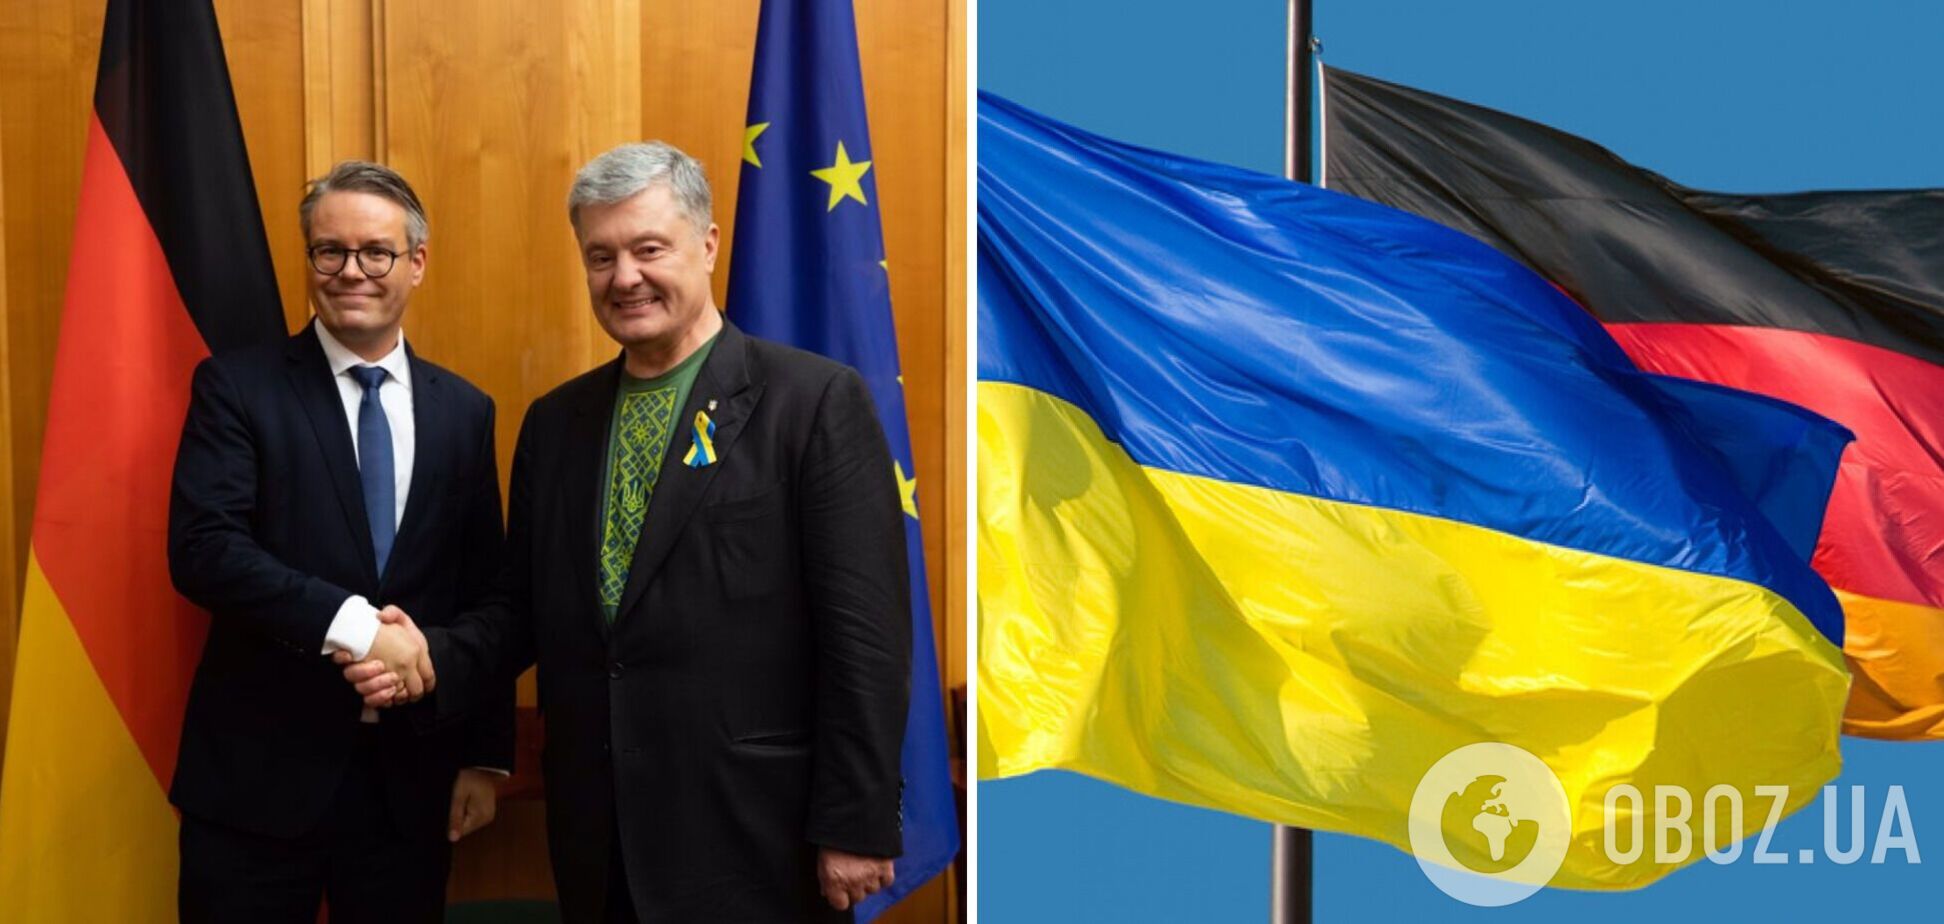 Порошенко в Берлине призвал наращивать поставки в Украину оружия и усилить финансовую поддержку